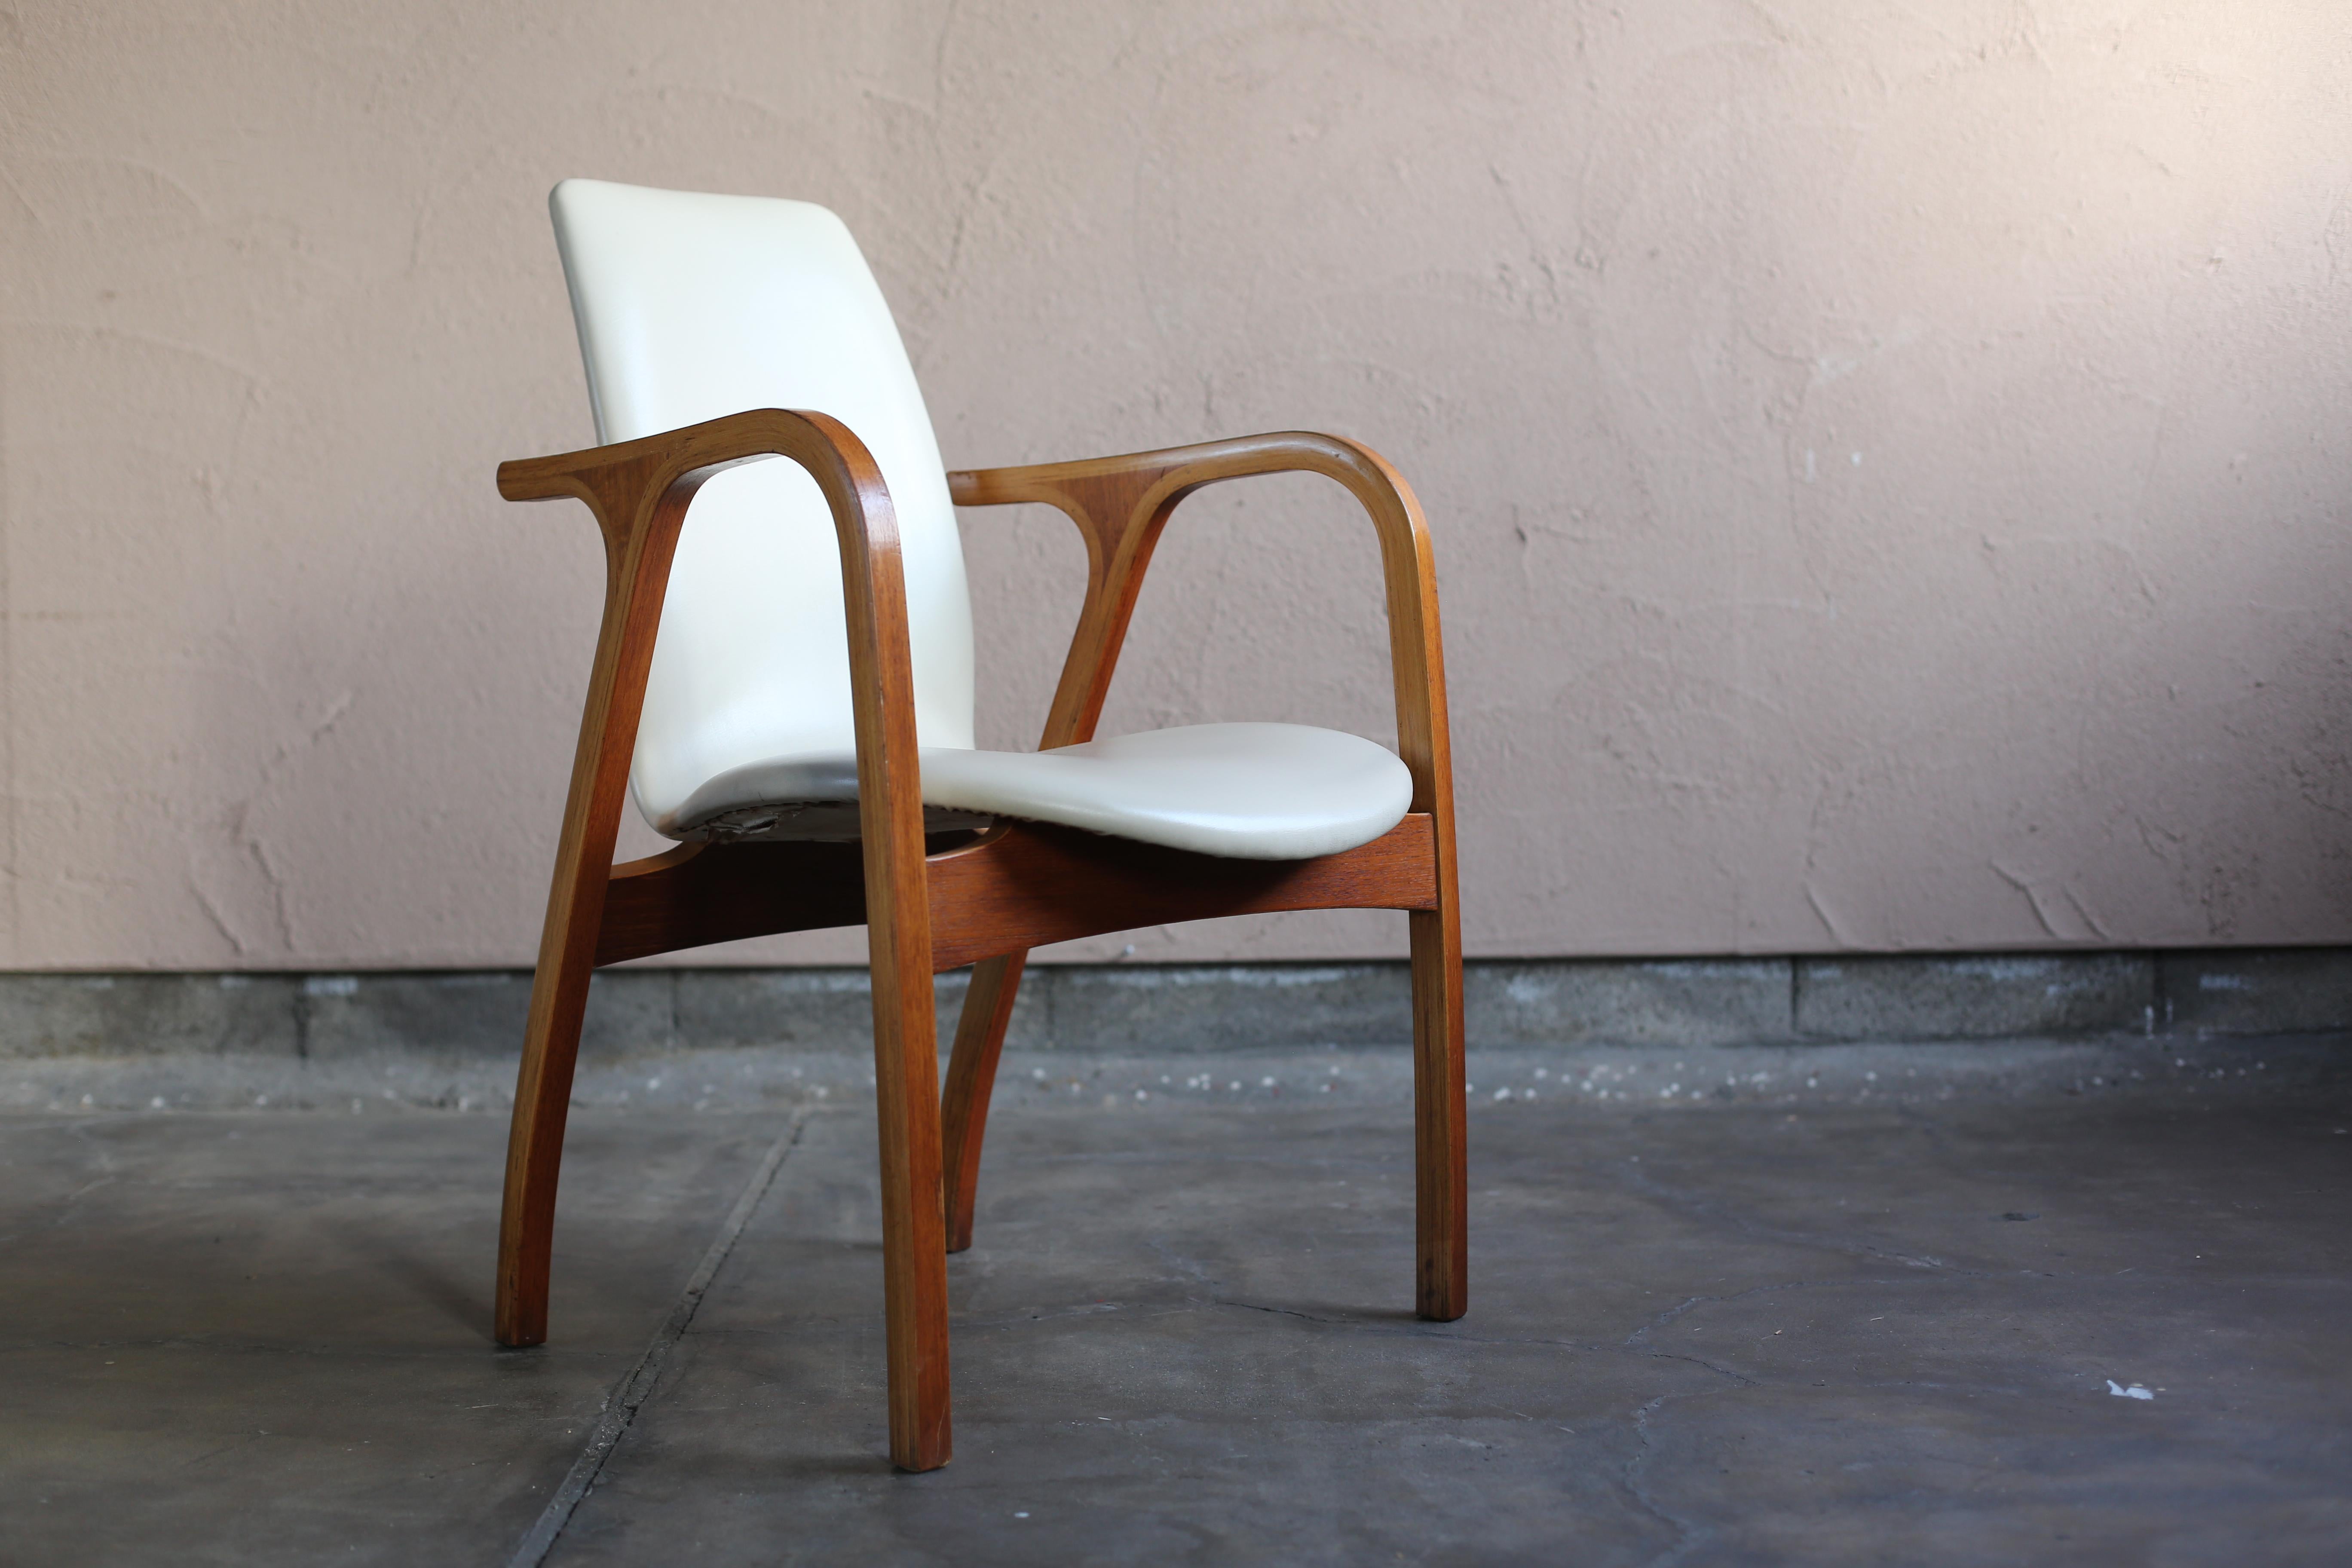 Der Antler Chair wurde 1966 vom Junzo Sakakura Architectural Research Institute entworfen.
Der Stuhl ist ein langjähriges Meisterwerk, das auch heute noch hergestellt wird.
Es handelt sich um ein seltenes Einbeinstativ, bei dem für den Rahmen